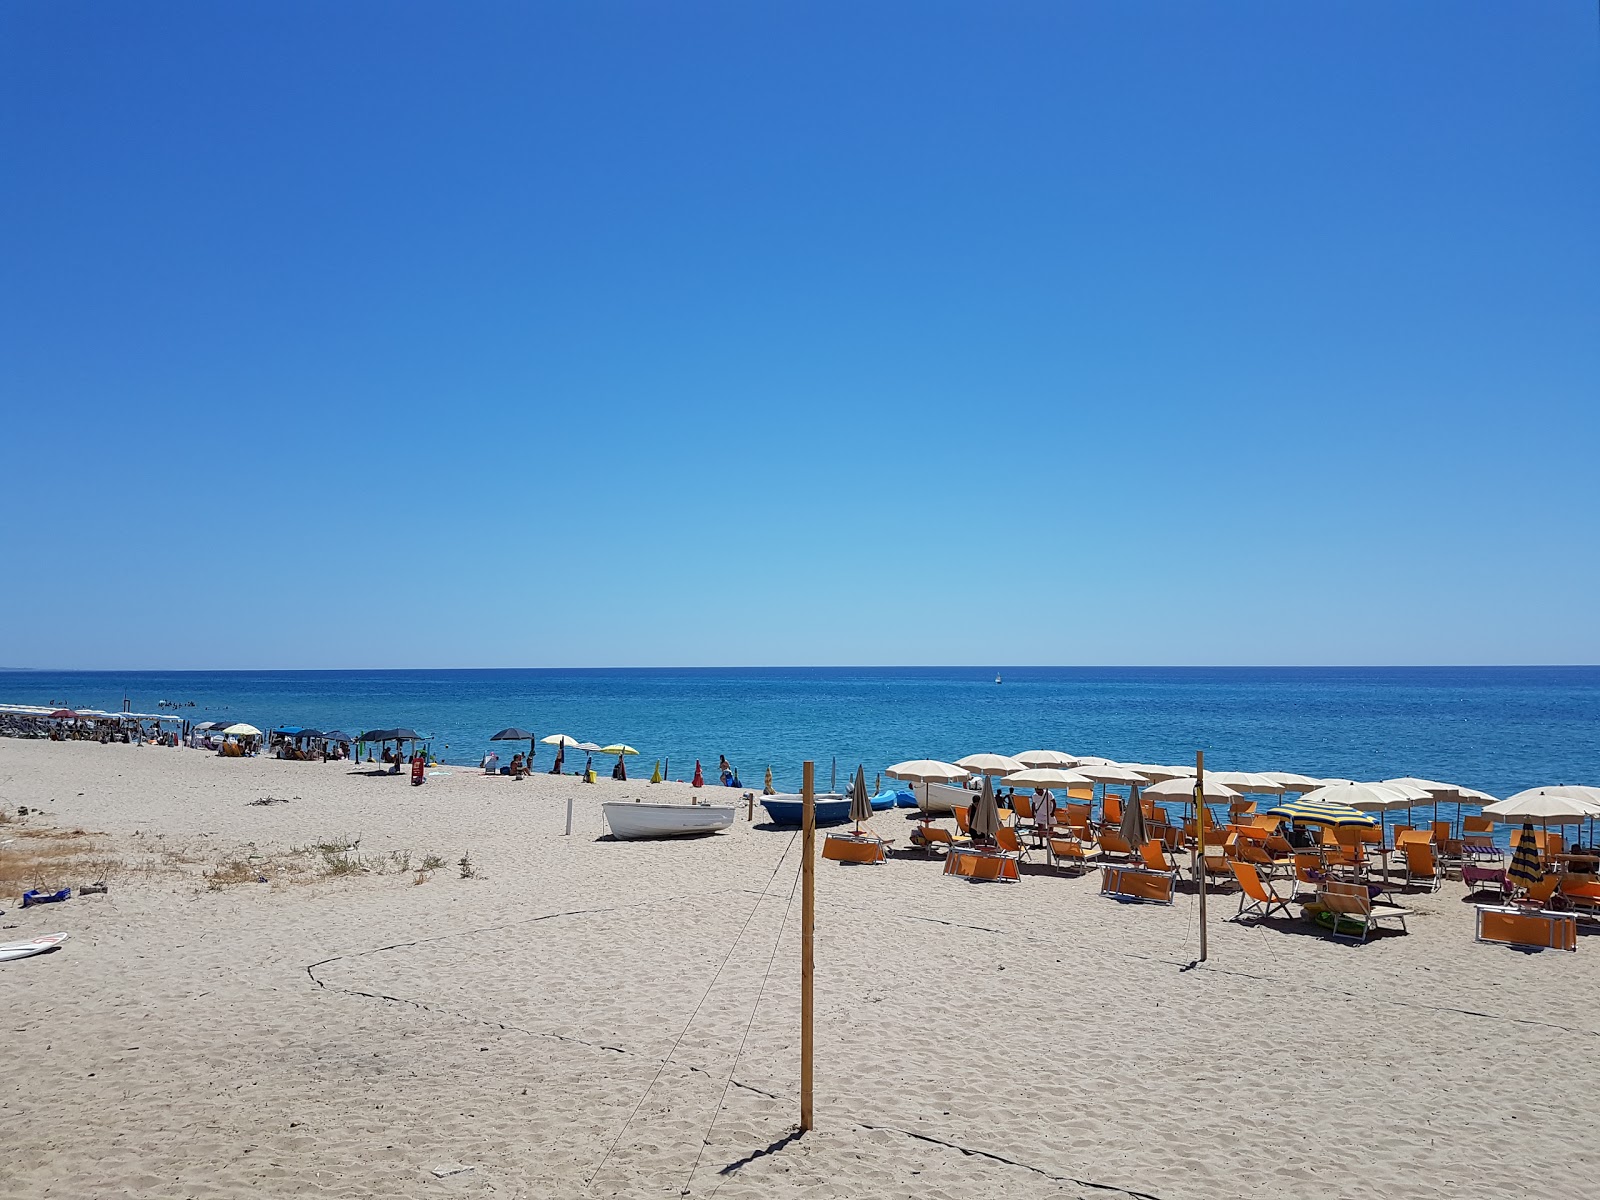 Fotografie cu Plaja Villaggio Carrao - locul popular printre cunoscătorii de relaxare